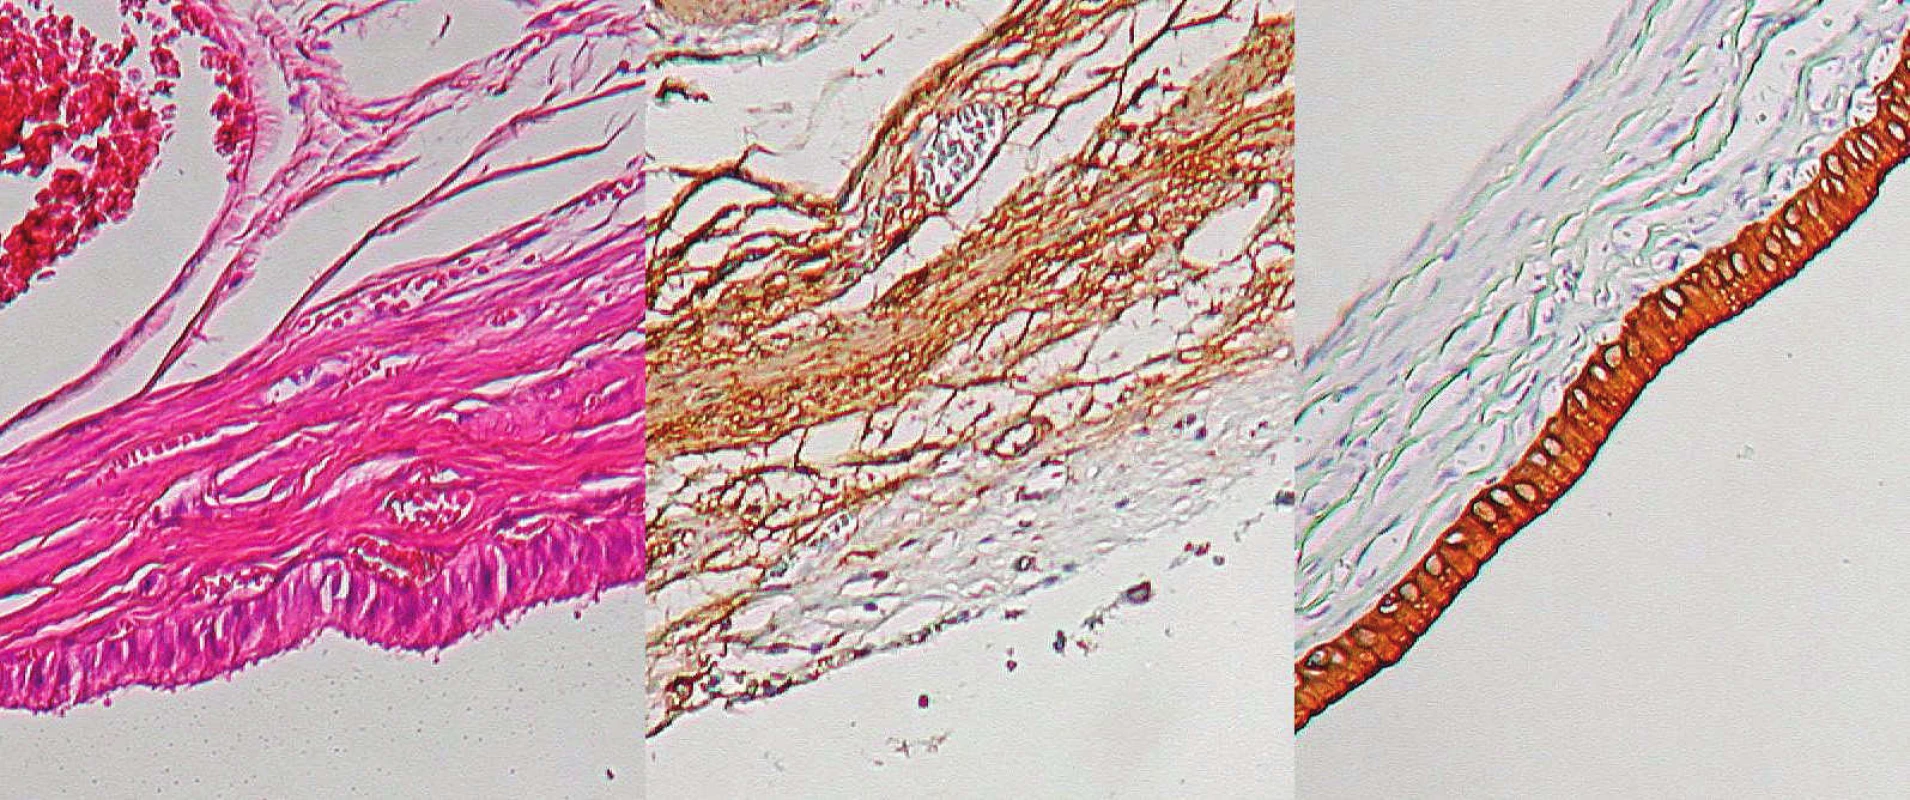 Histologický nález – žlčník, zľava normálne farbenie, v strede svalovina znázornená protilátkami proti aktínu,
vpravo epitel žlčových ciest znázornený protilátkami proti cytokeratínu C19
Fig. 7. Histological preparation – gall-bladder: normal staining on the left, muscle layer stained with monoclonal antibodies
against actin in the middle, biliary epithelium stained with antibodies against cytokeratin C19 on the right